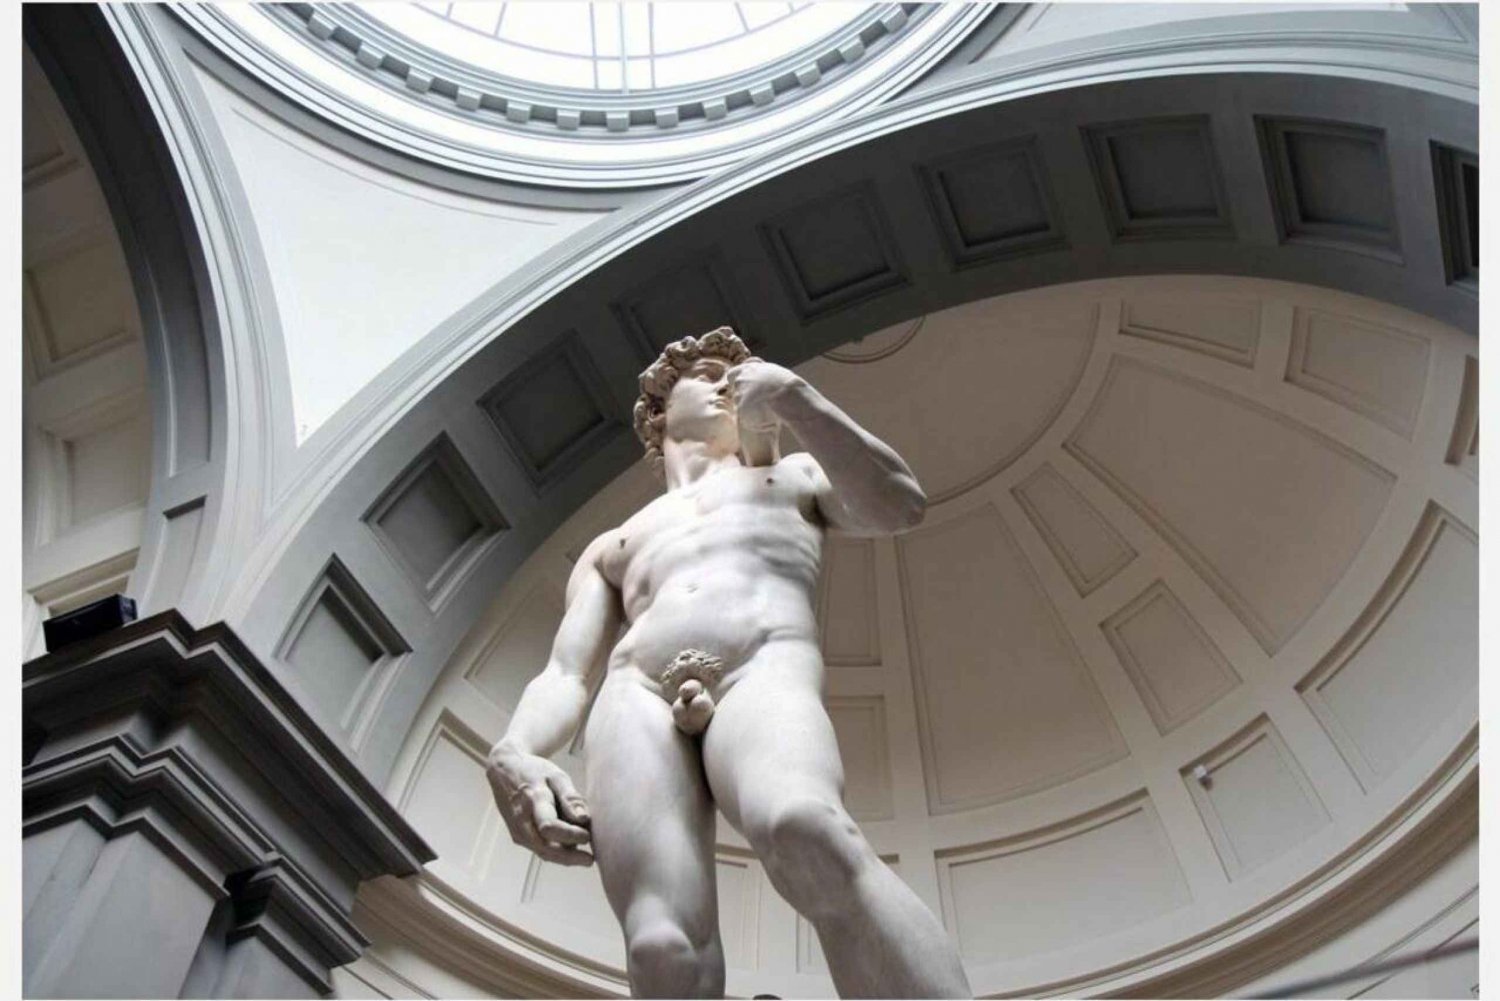 Firenze: Accademia Galleria opastettu kierros taideasiantuntijan kanssa.